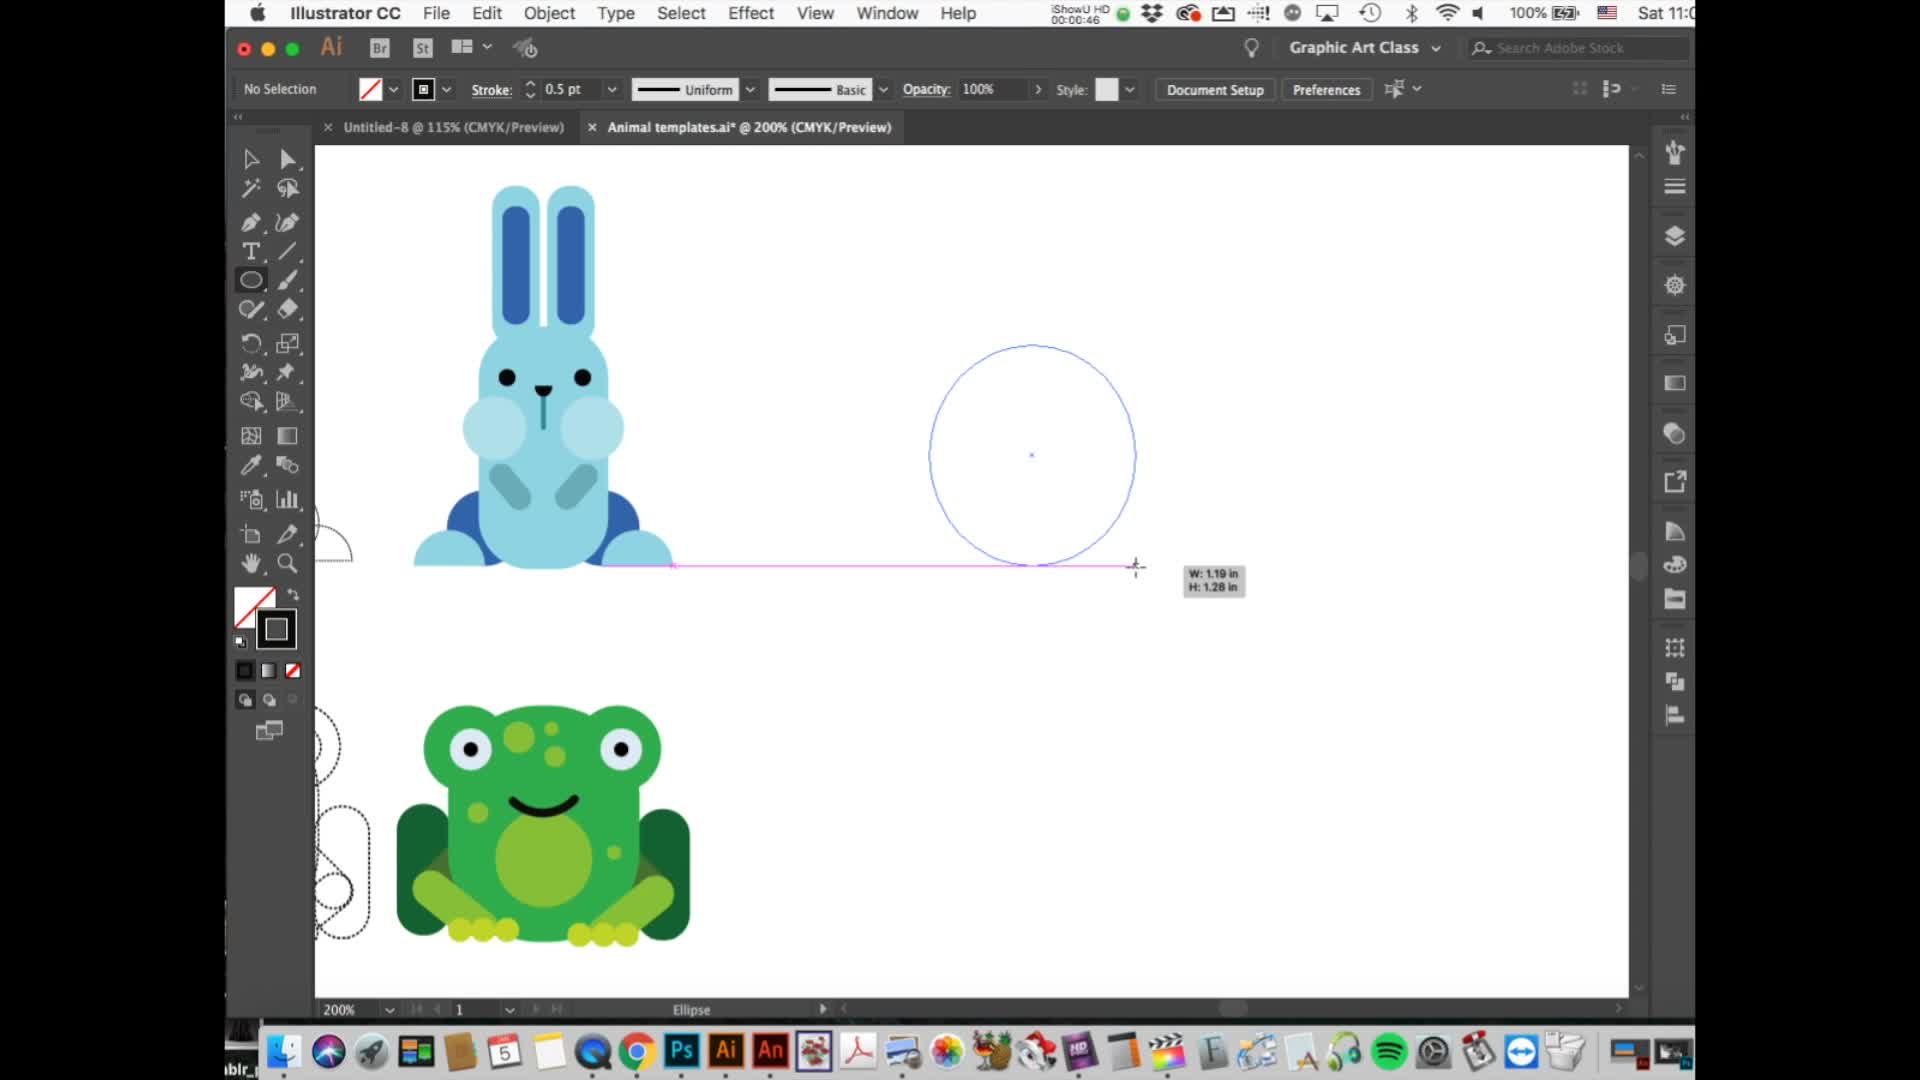 Adobe Illustrator: Basic Shapes and Arranging